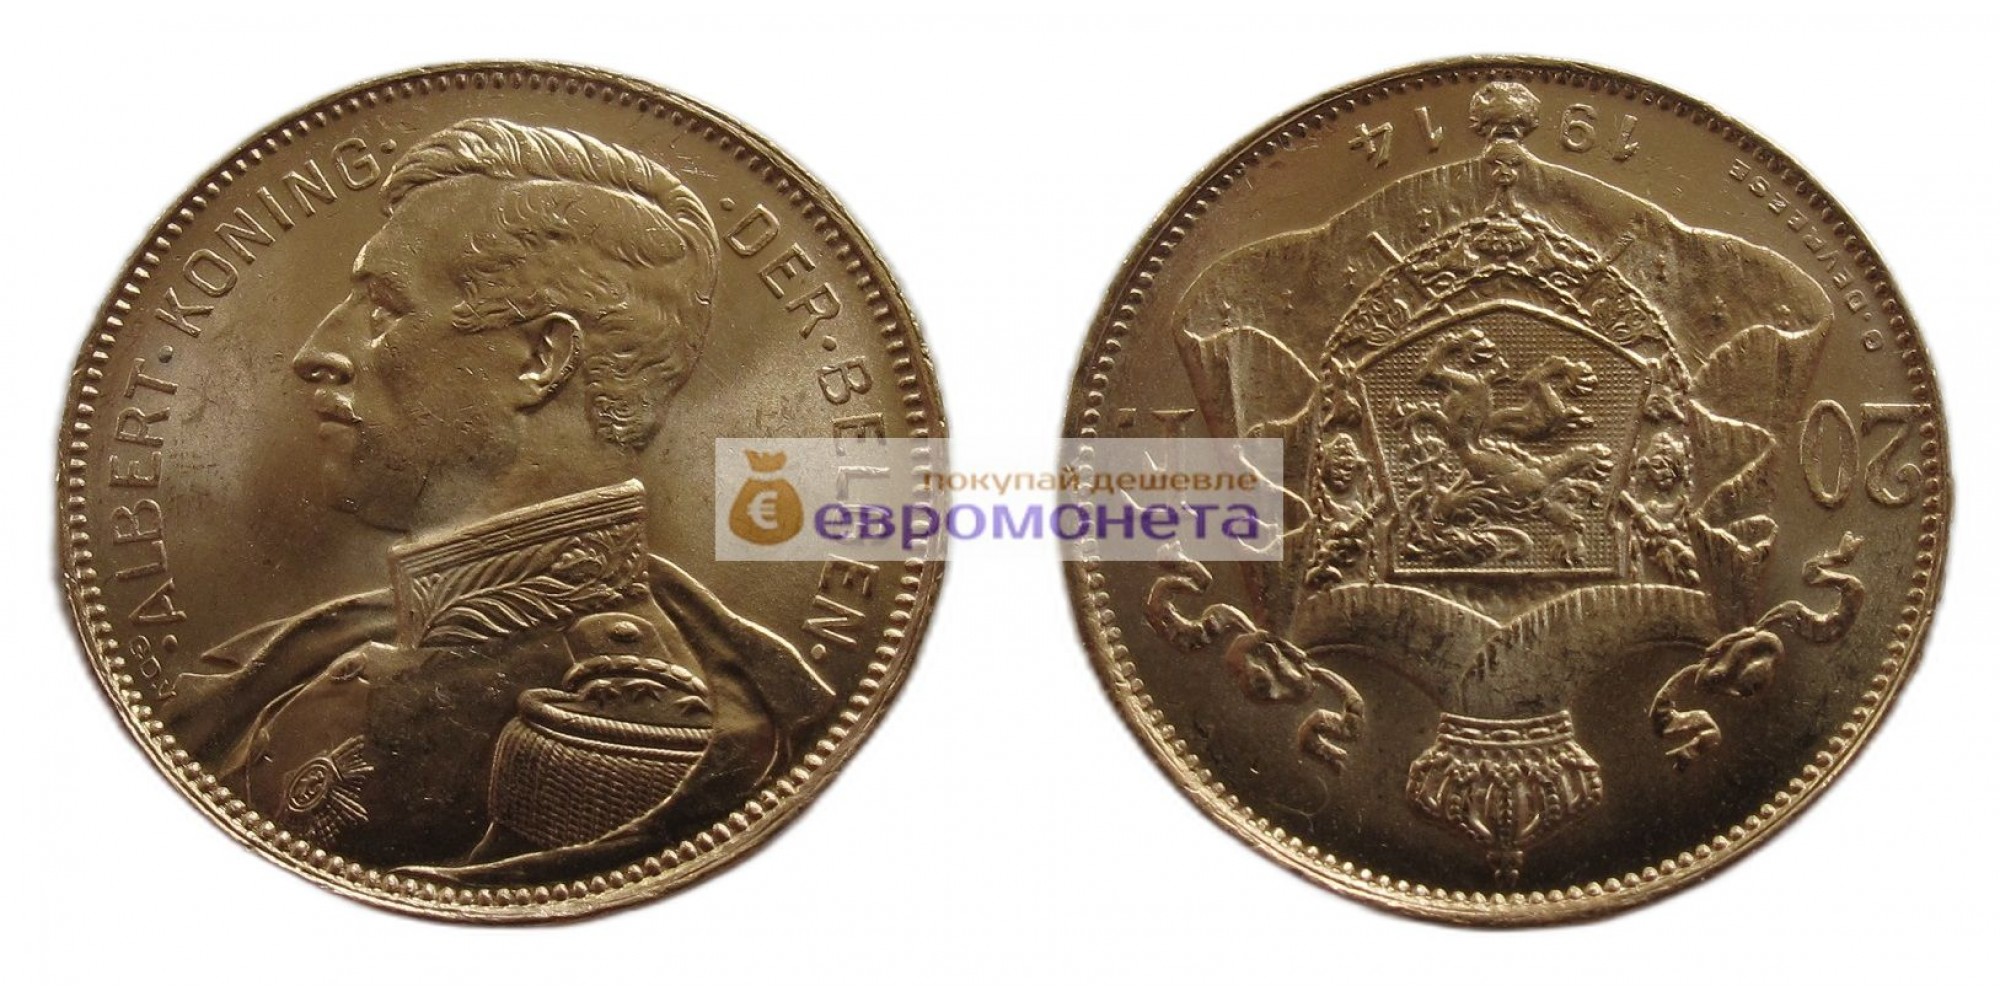 Бельгия 20 франков 1914 год. Альберт I. Надпись на голландском - 'ALBERT KONING DER BELGEN'. Золото. Тираж: 125 000 штук